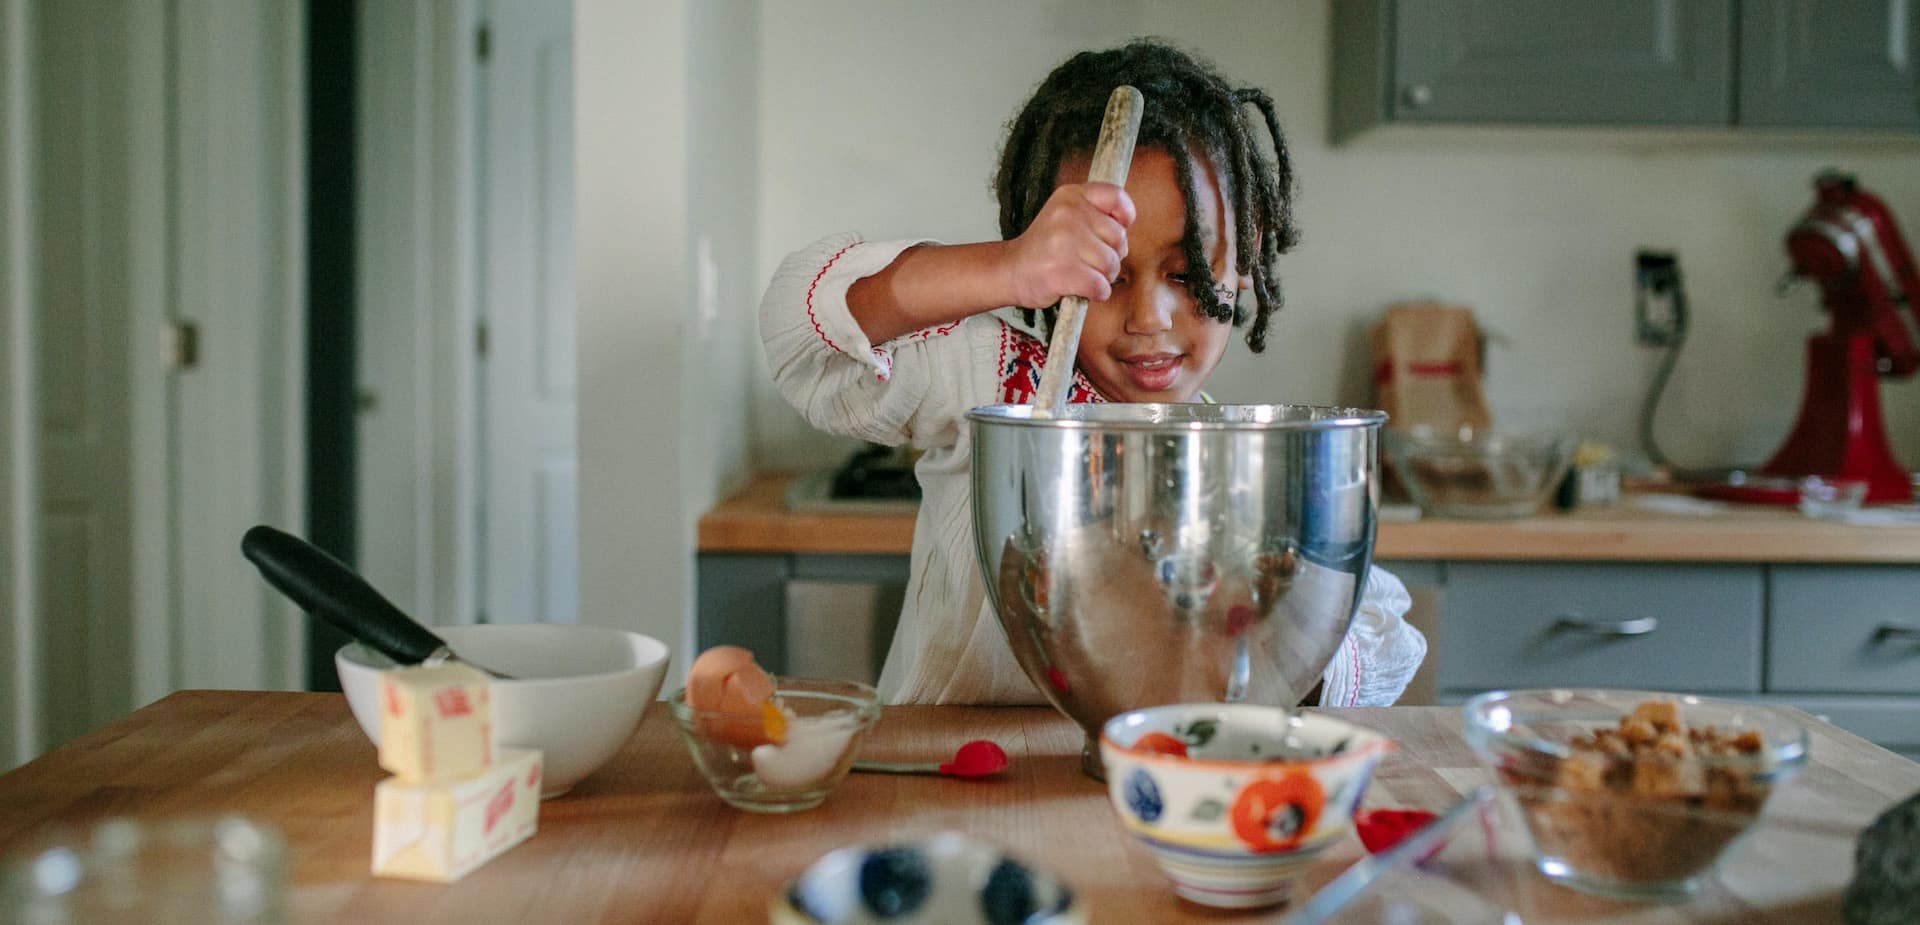 Kook- en bakwedstrijdjes met het gezin en leuke uitdagingen in de keuken om thuis van te genieten